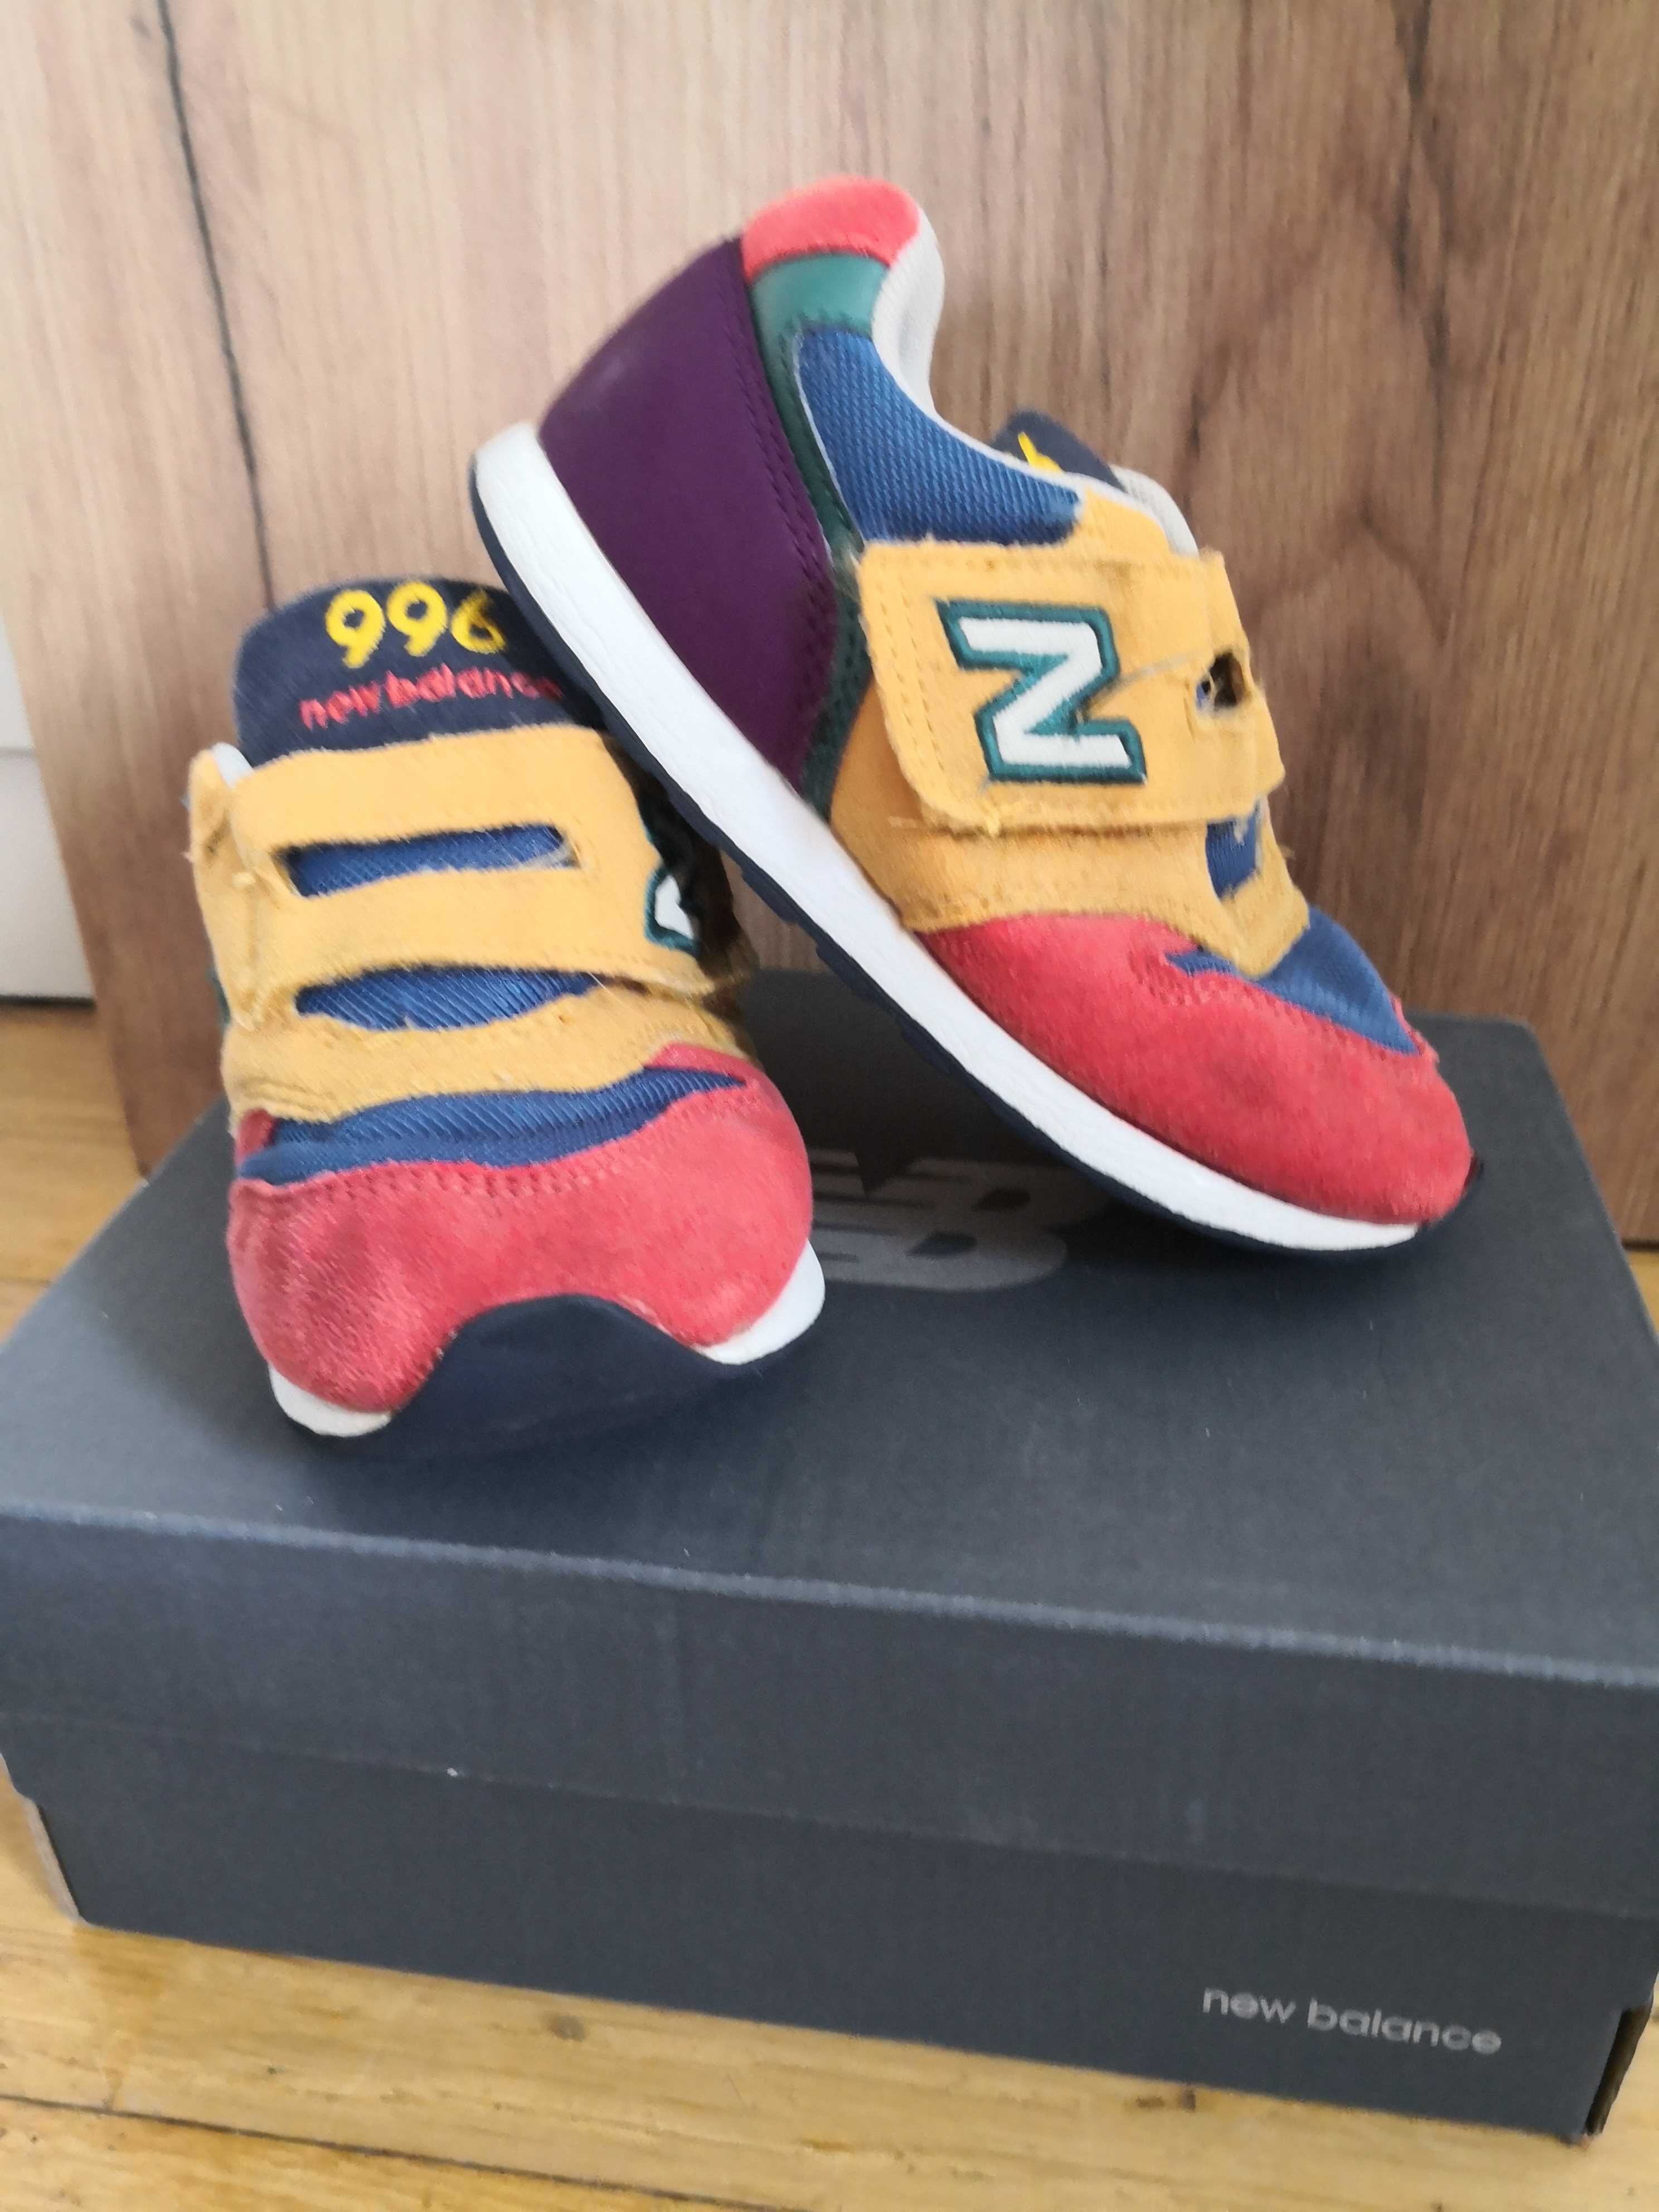 Kultowe 996 - New Balance - buty chłopięce 26